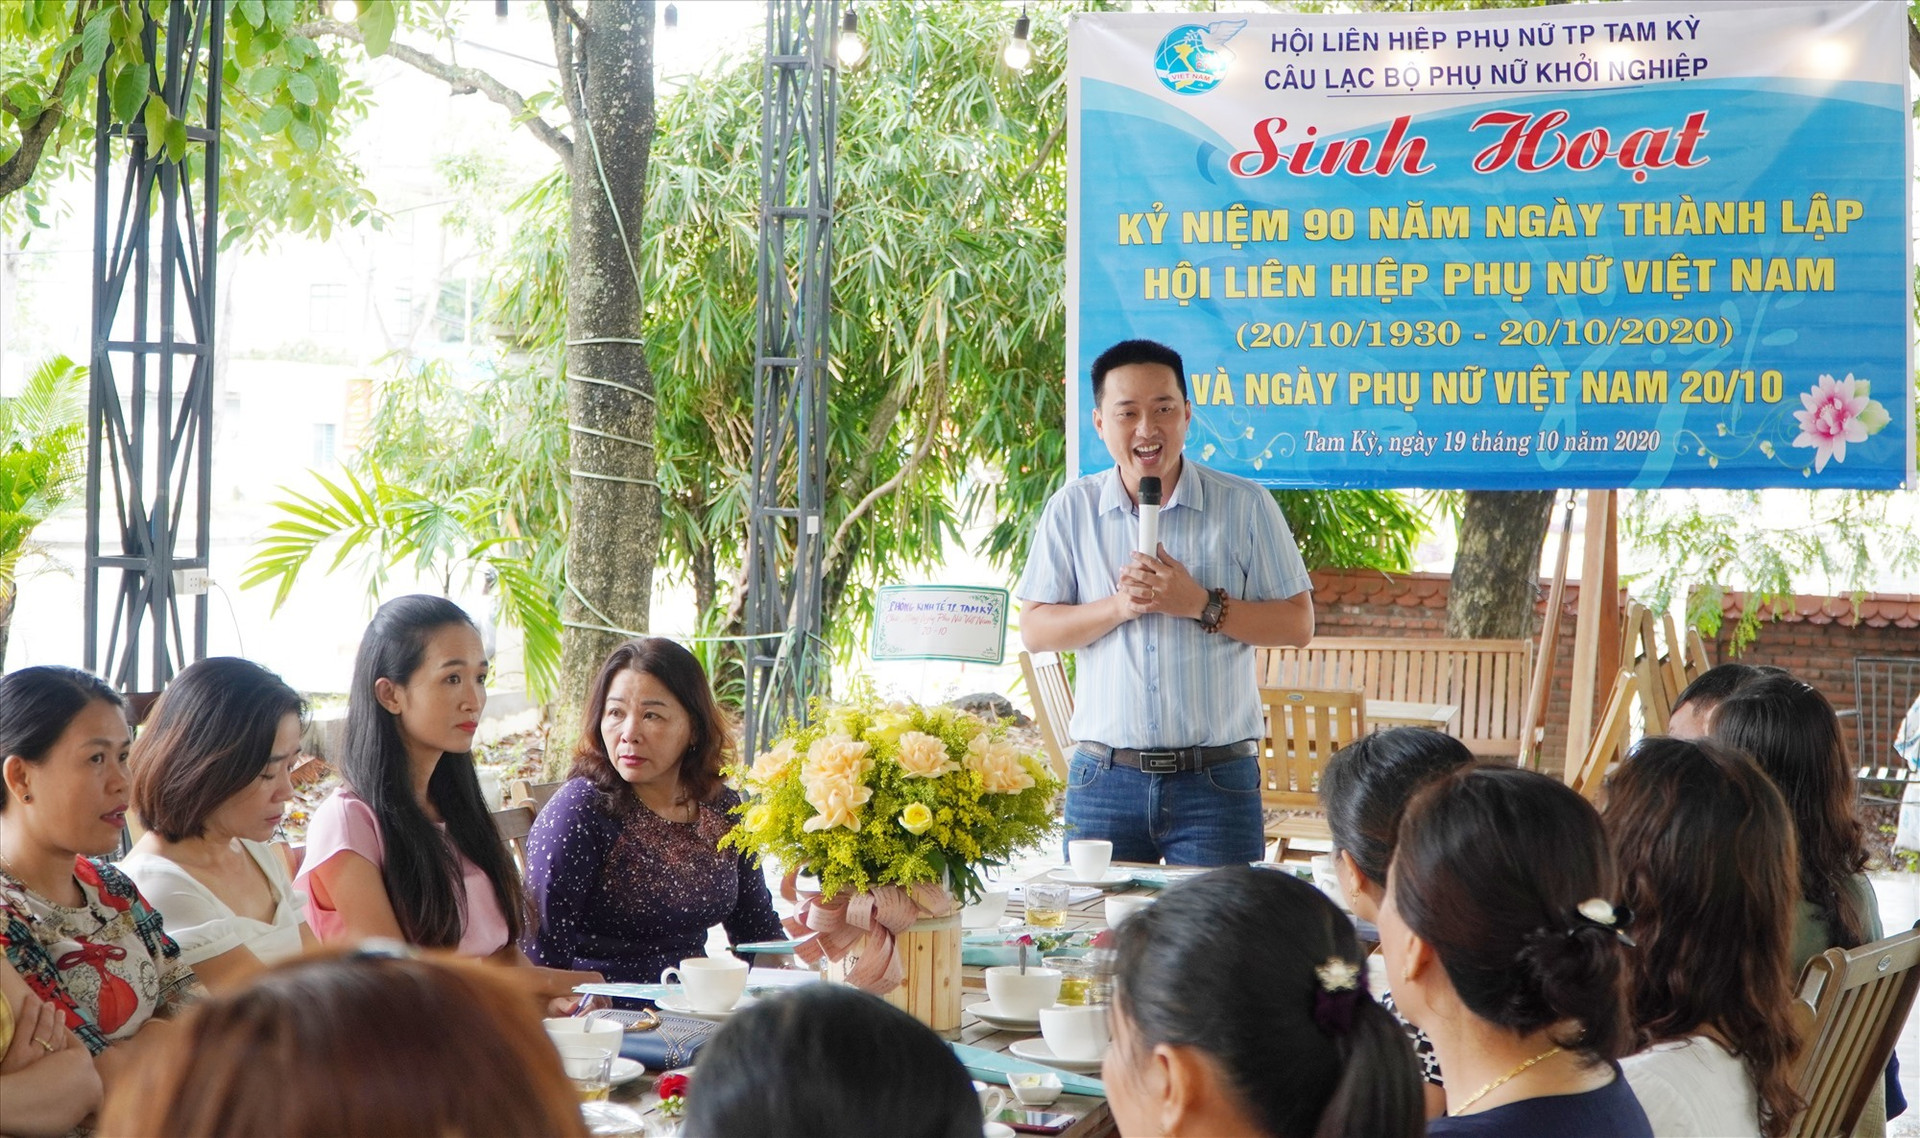 Ông Nguyễn Bão Quốc chia sẻ những kiến thức về khởi nghiệp. Ảnh: PHAN VINH